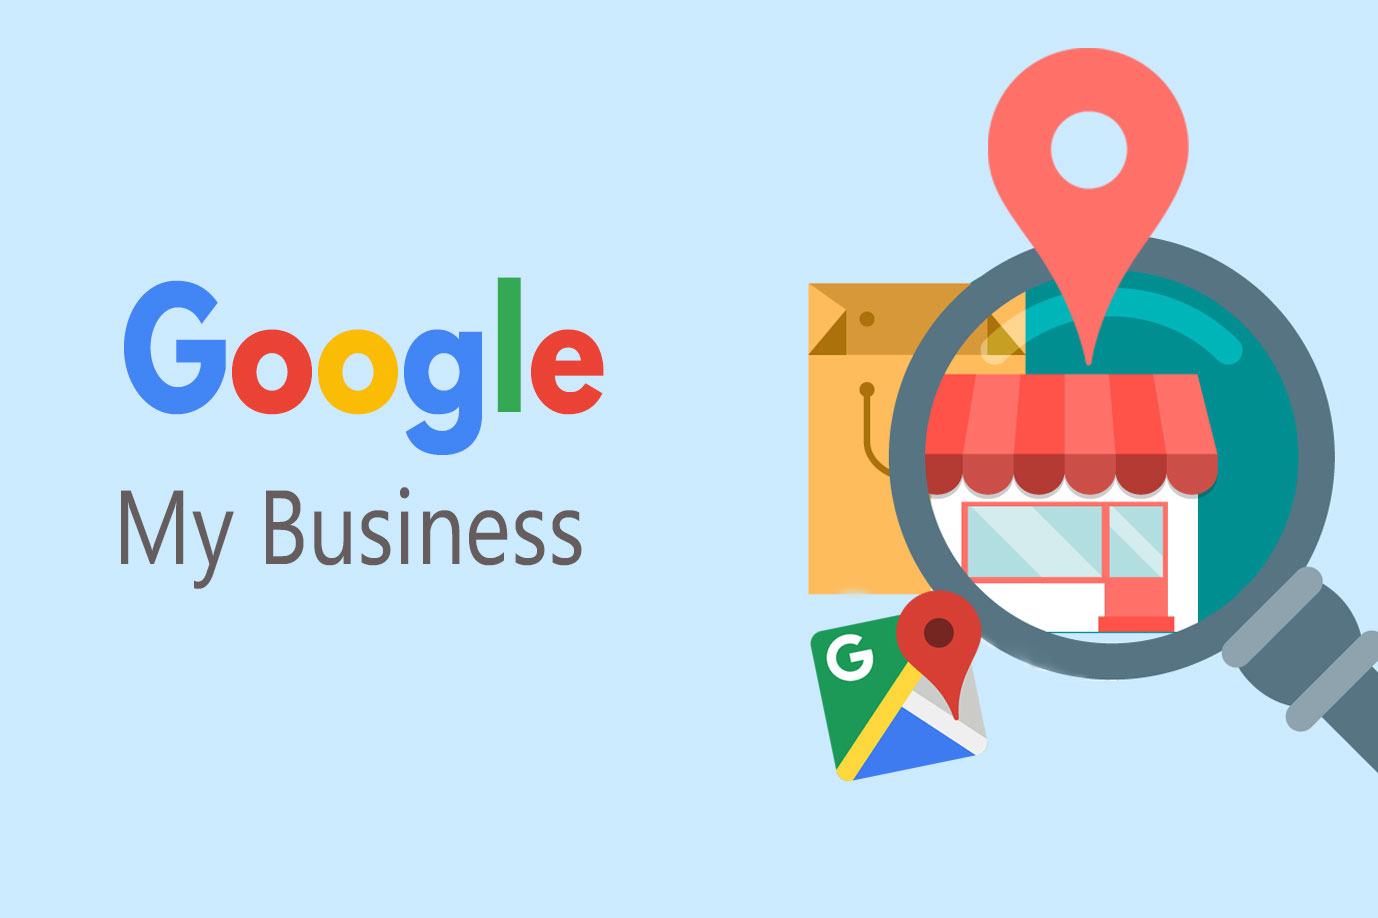 Google Business là gì? Cách tối ưu Google Business hiệu quả nhất ...